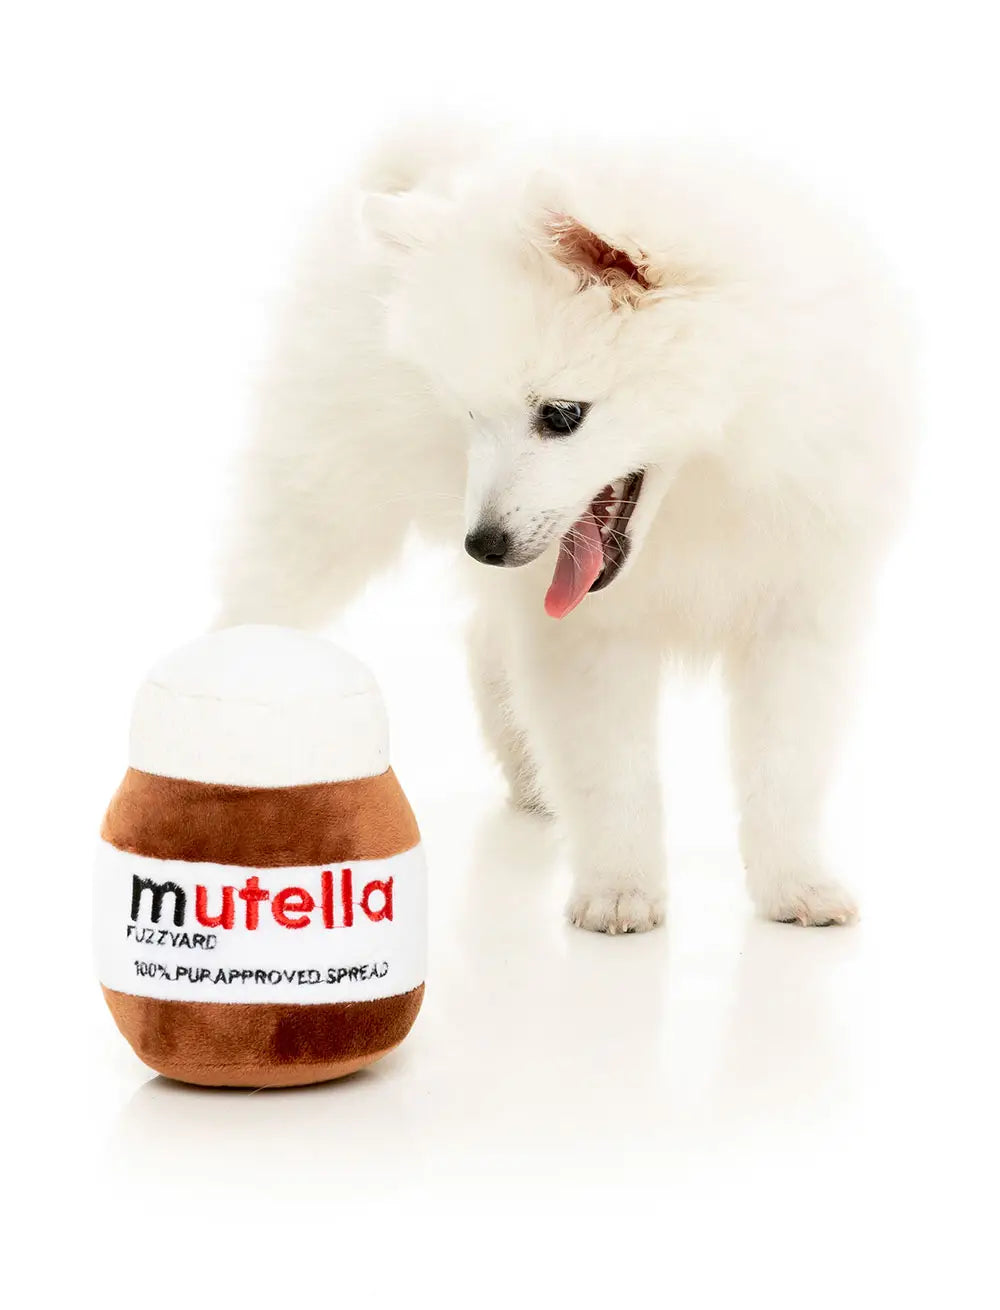 Fuzzyard Nutella Dog Toy